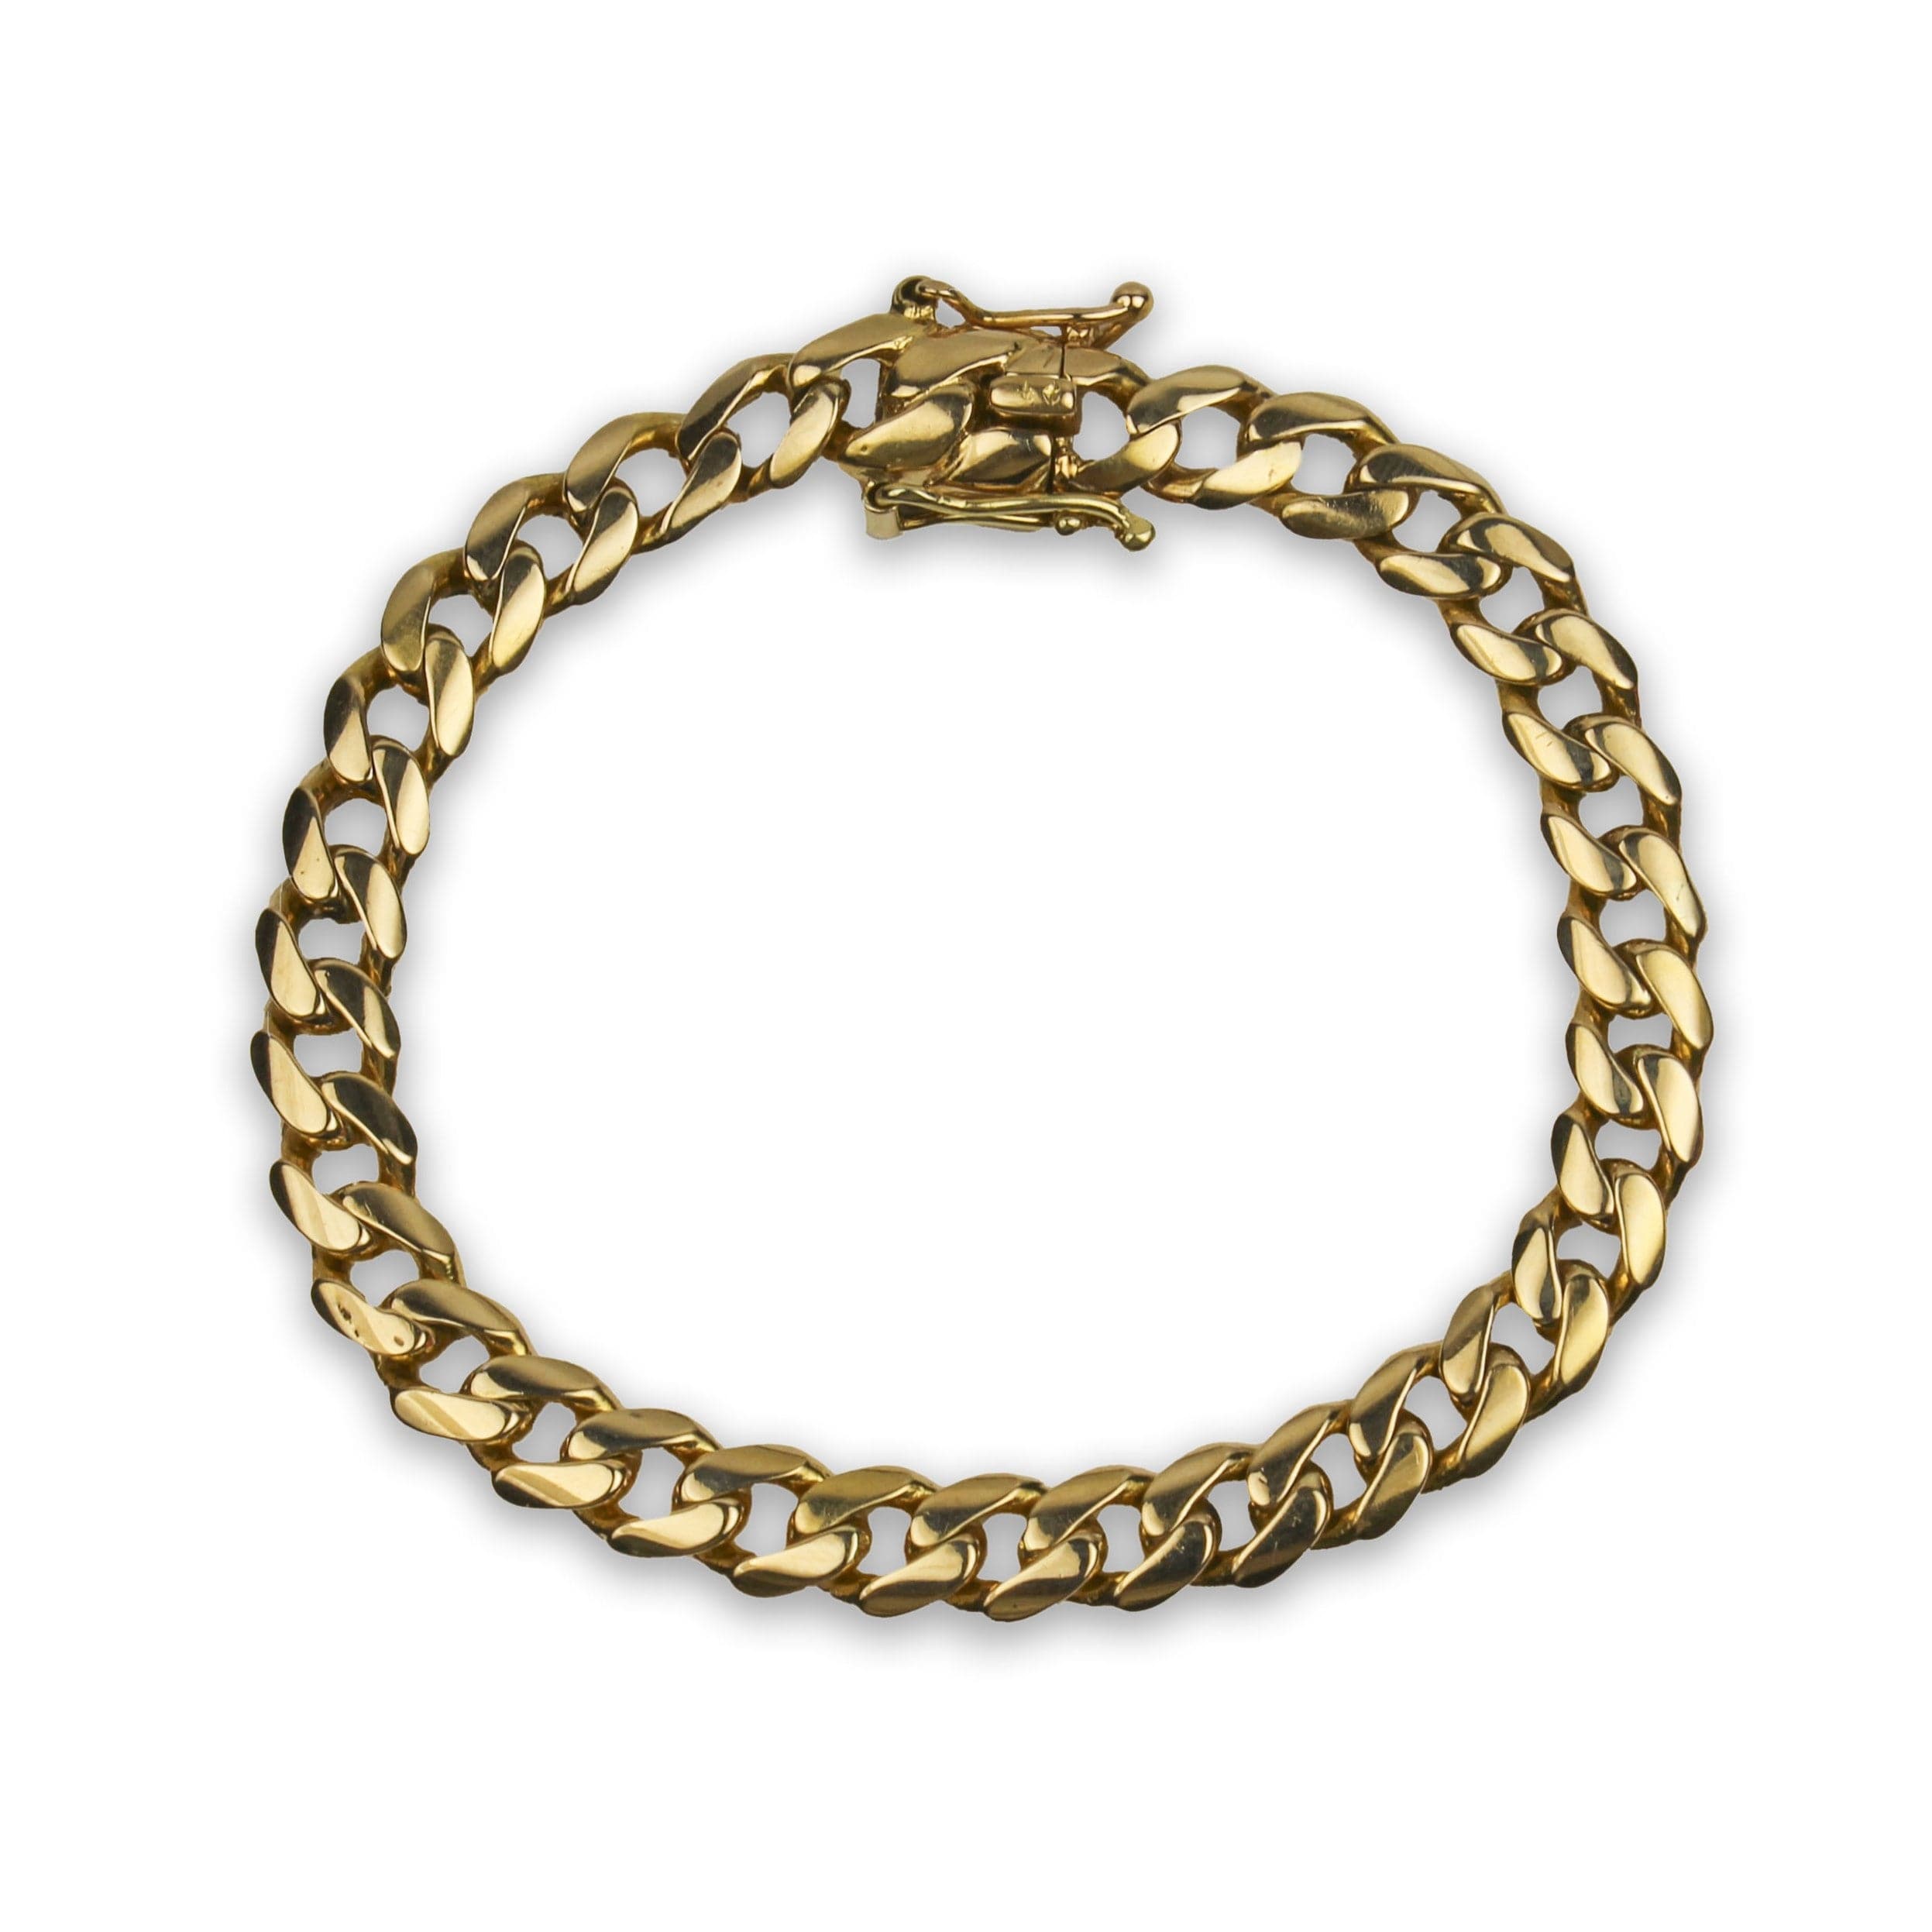 PAGE Estate Bracelet Estate 18K Yellow Gold Curb Link Bracelet